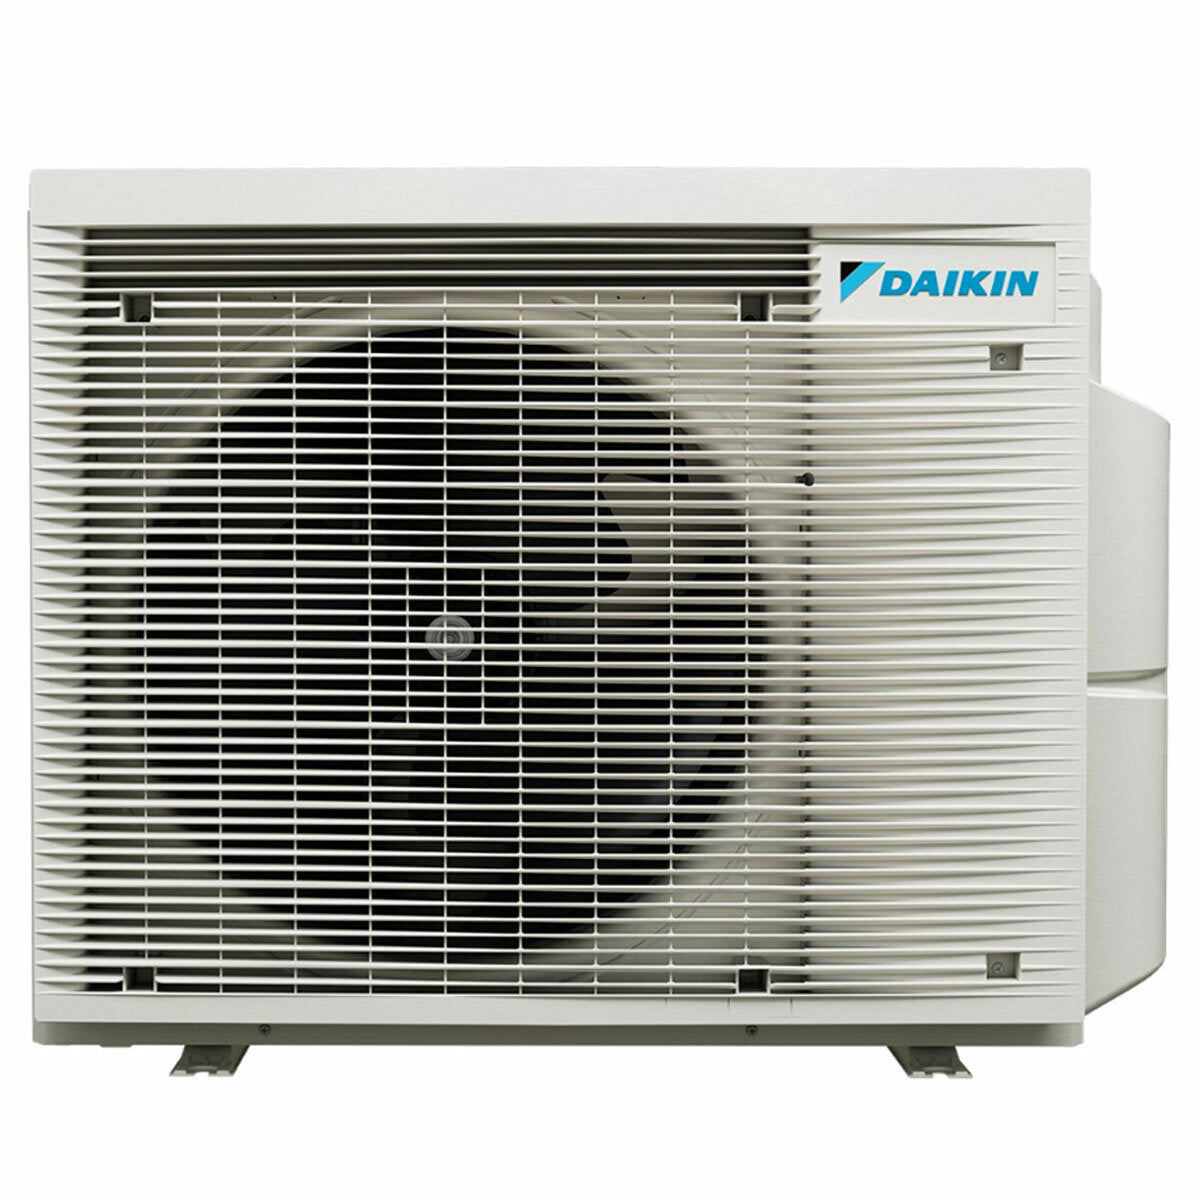 Daikin Emura Klimaanlage 3 Split Panels 7000 + 9000 + 9000 + 12000 BTU Inverter A + WLAN Außengerät 6,8 kW Schwarz